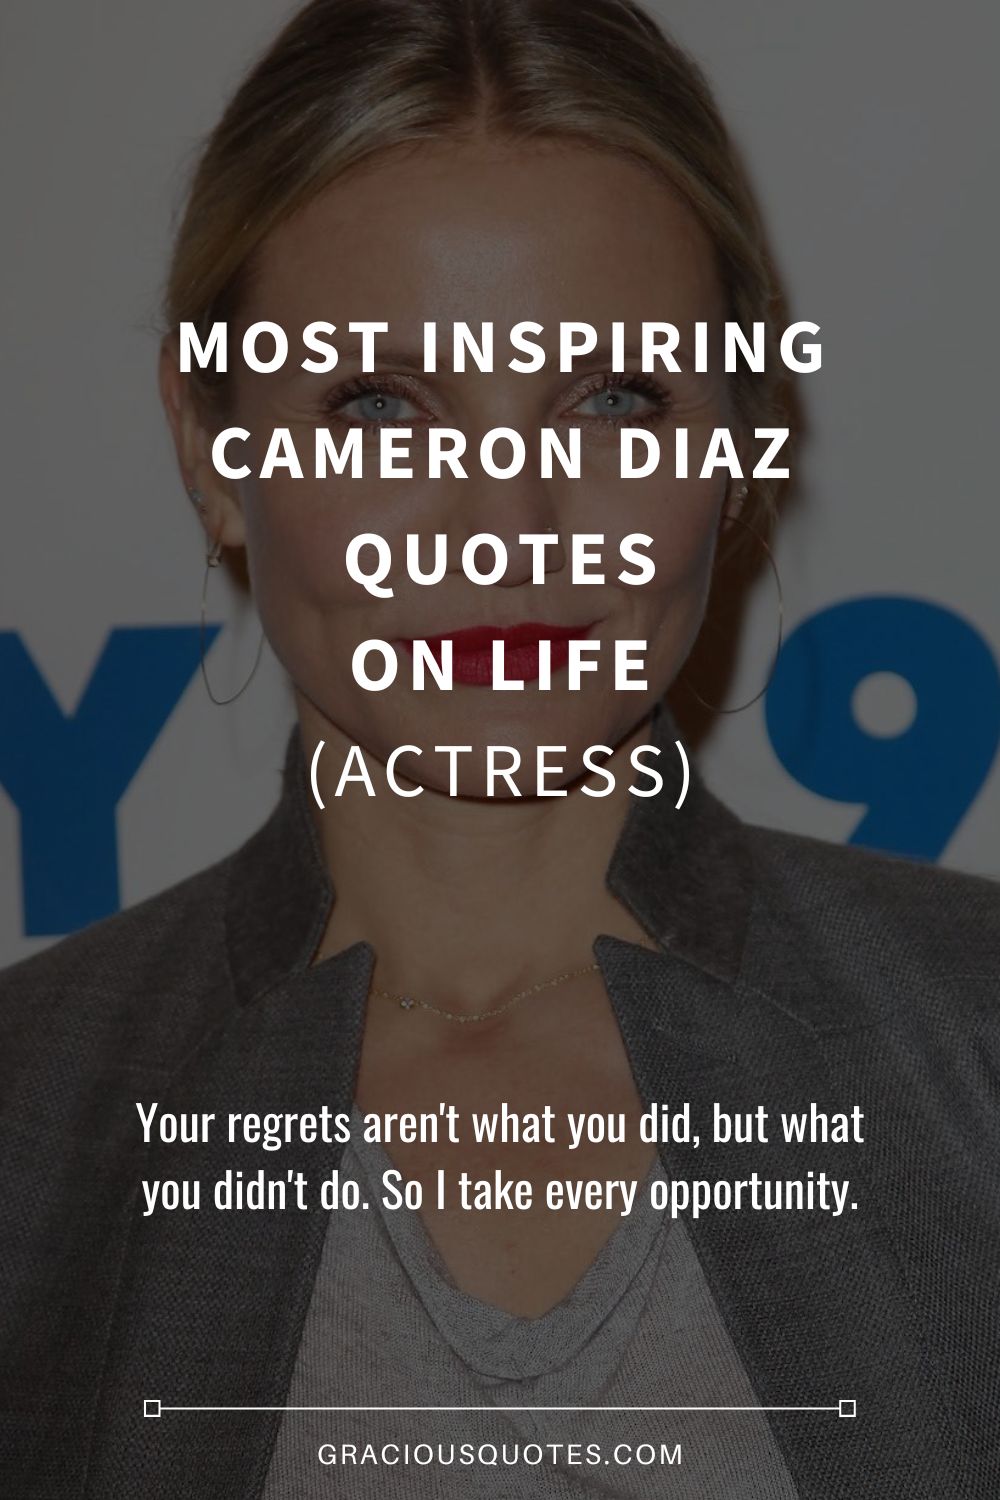 Most Inspiring Cameron Diaz Quotes on Life (ACTRESS) - Gracious Quotes